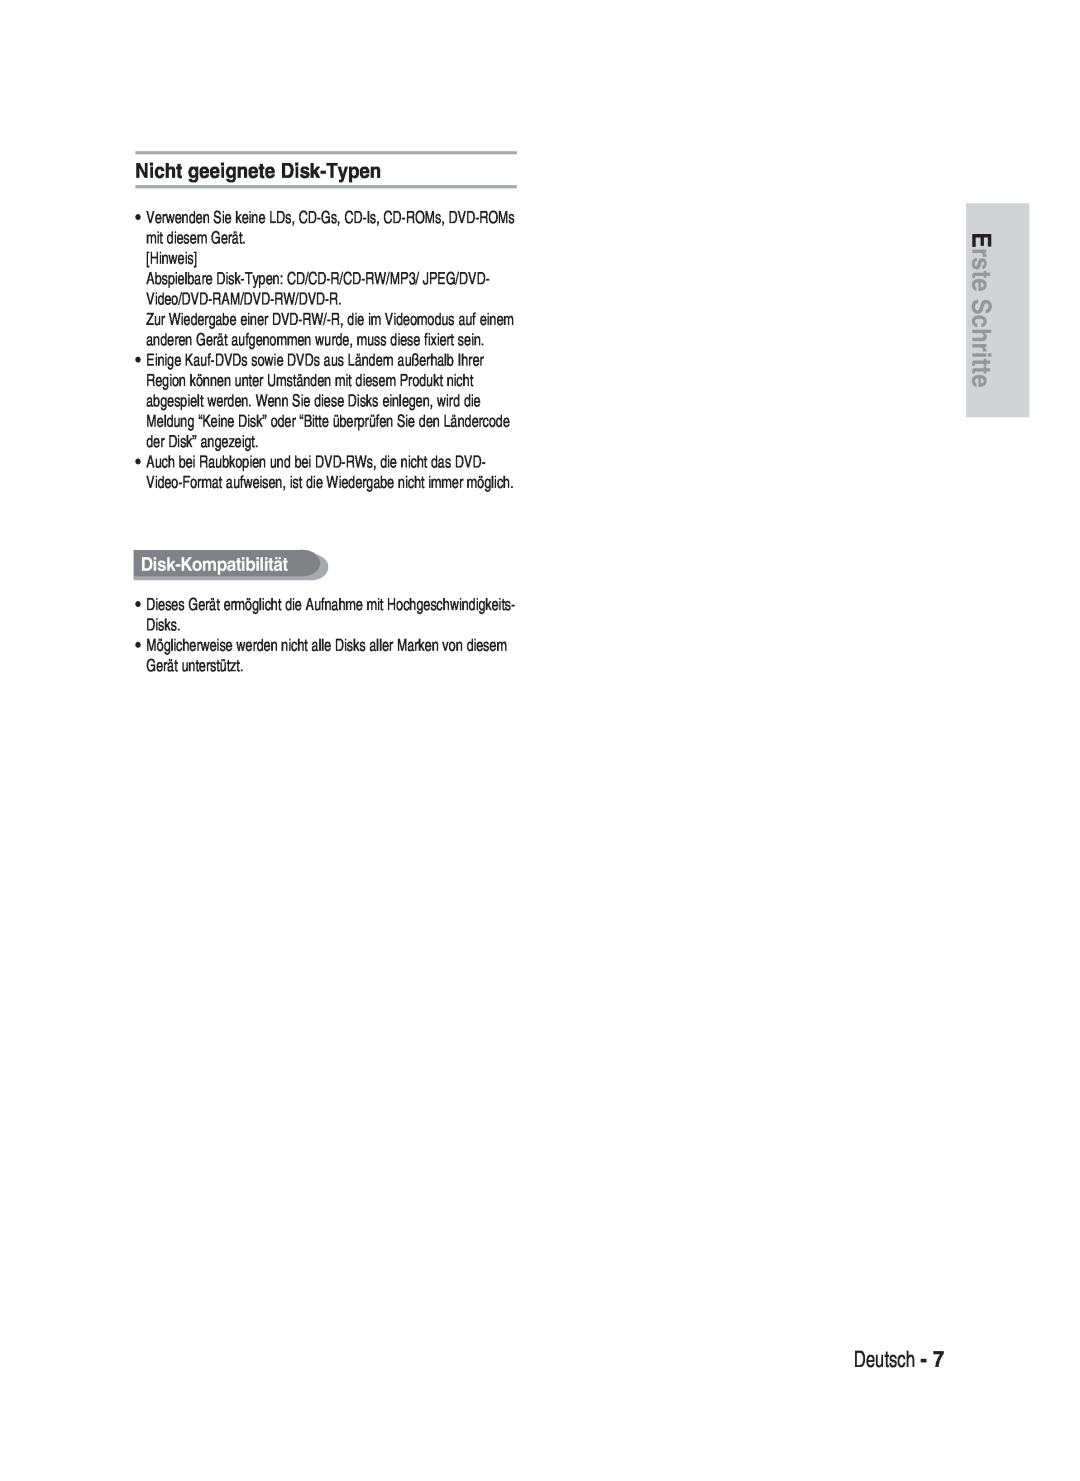 Samsung DVD-HR730/XEG, DVD-HR730/XEC manual Nicht geeignete Disk-Typen, Disk-Kompatibilität, Erste Schritte, Deutsch 